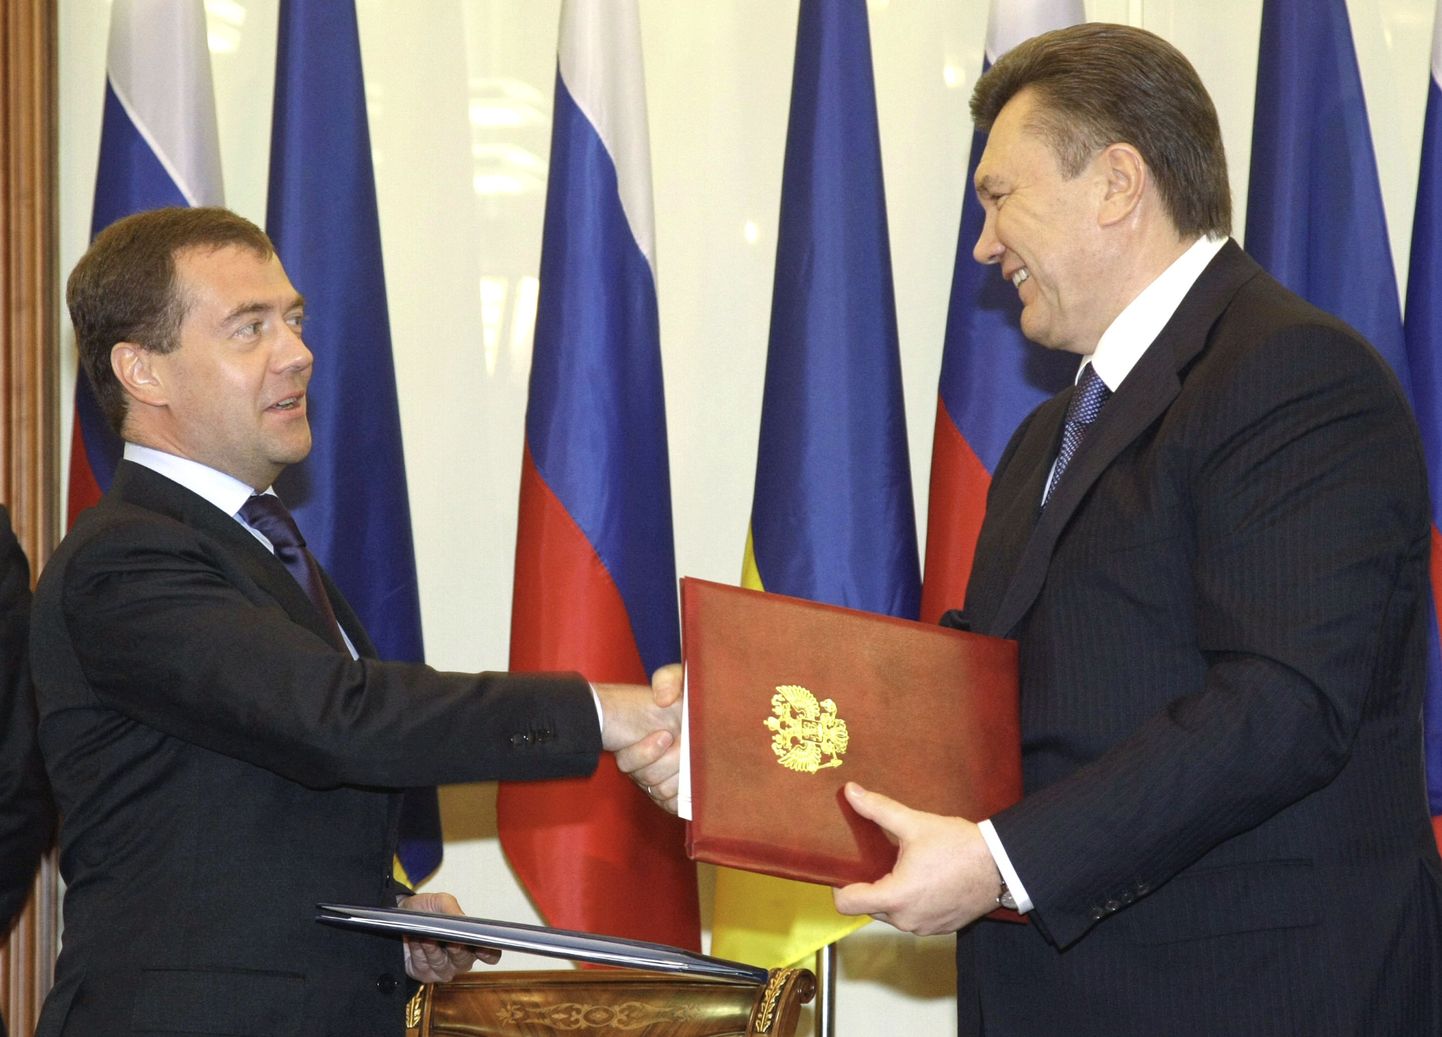 Дмитрий Медведев и Виктор Янукович обмениваются документами после подписания в Кракове 21 апреля 2010 года соглашения о ценах на газ.